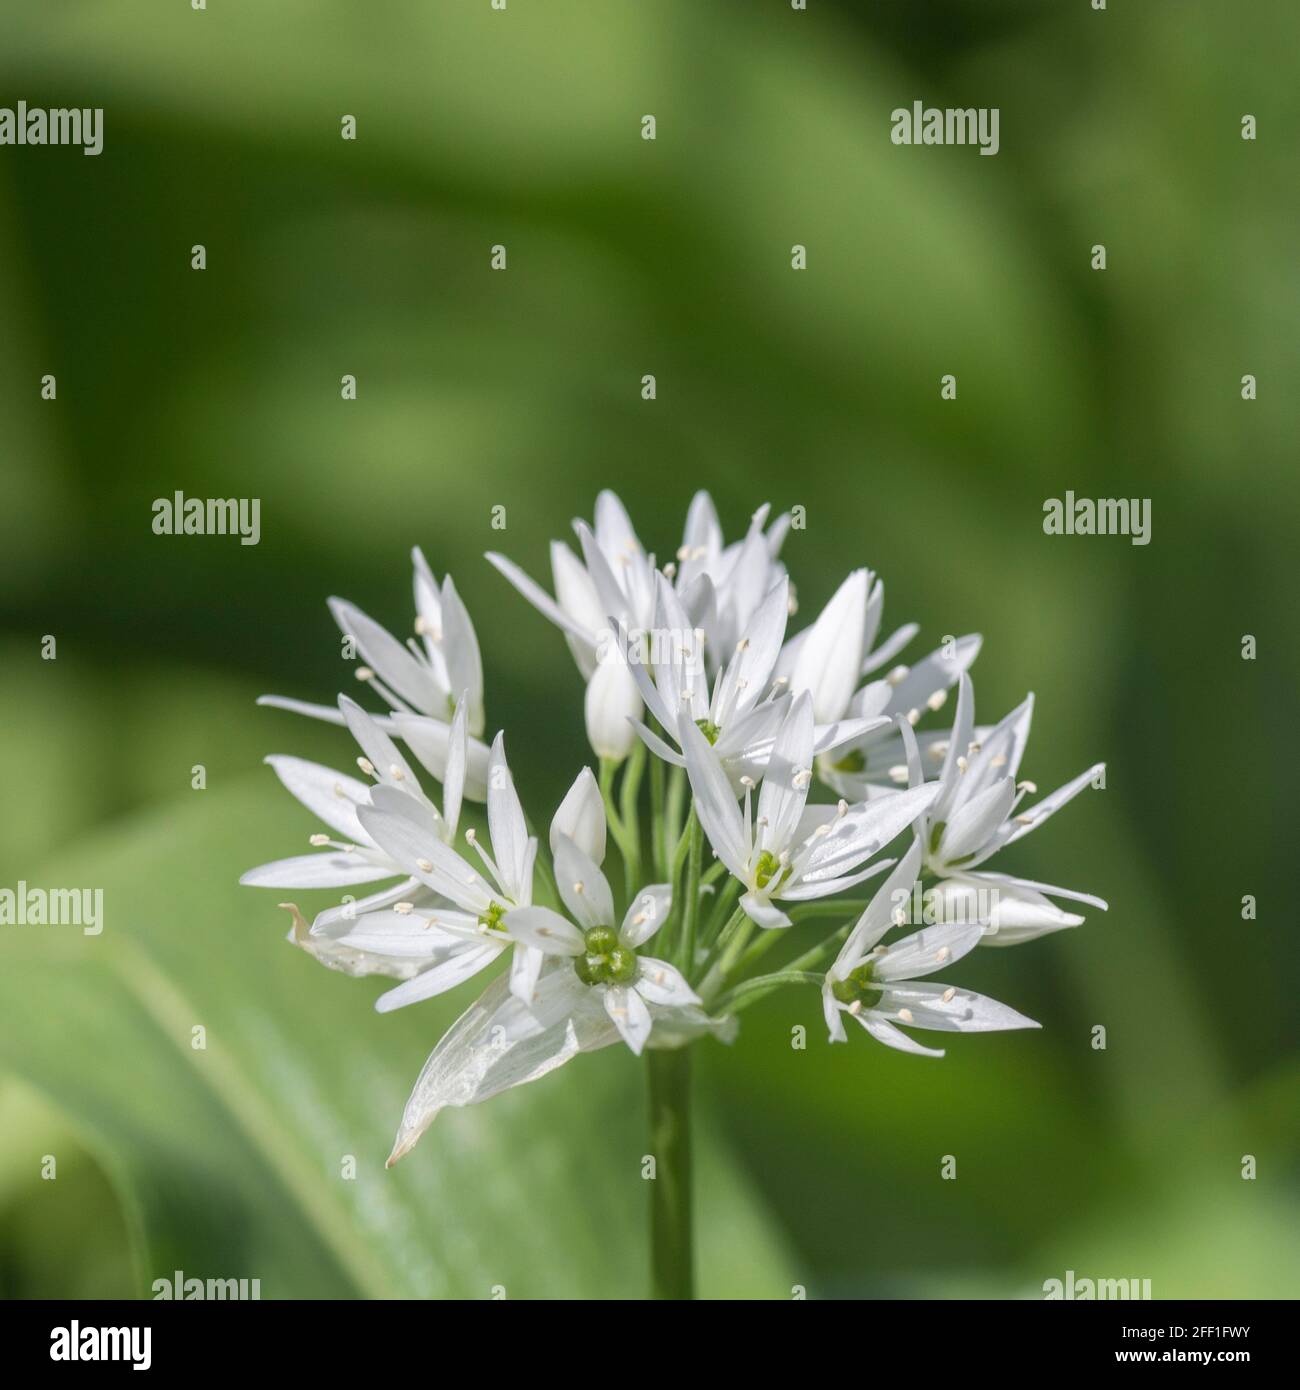 Gros plan de fleurs blanches de l'ail sauvage appelé Ramsons / Allium ursinum. Un vert sauvage comestible et savoureux, autrefois utilisé comme plante médicinale Banque D'Images